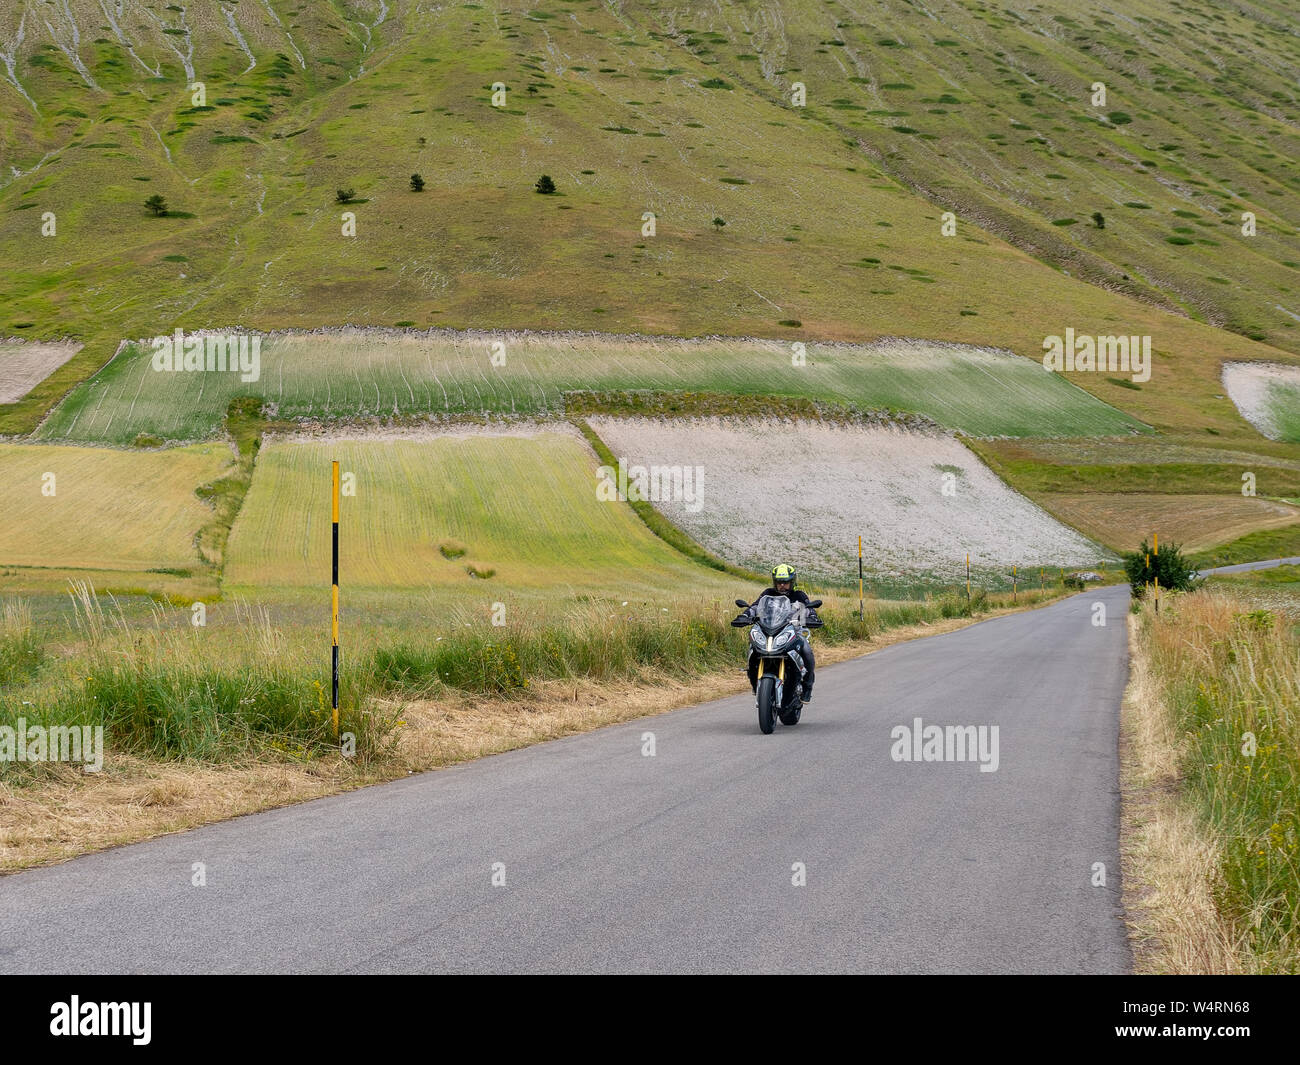 CASTELLUCCIO DI NORCIA, Italia - 14 luglio 2019: Unidentified motociclista sulla strada aperta, Castelluccio di Norcia, Italia. Foto Stock